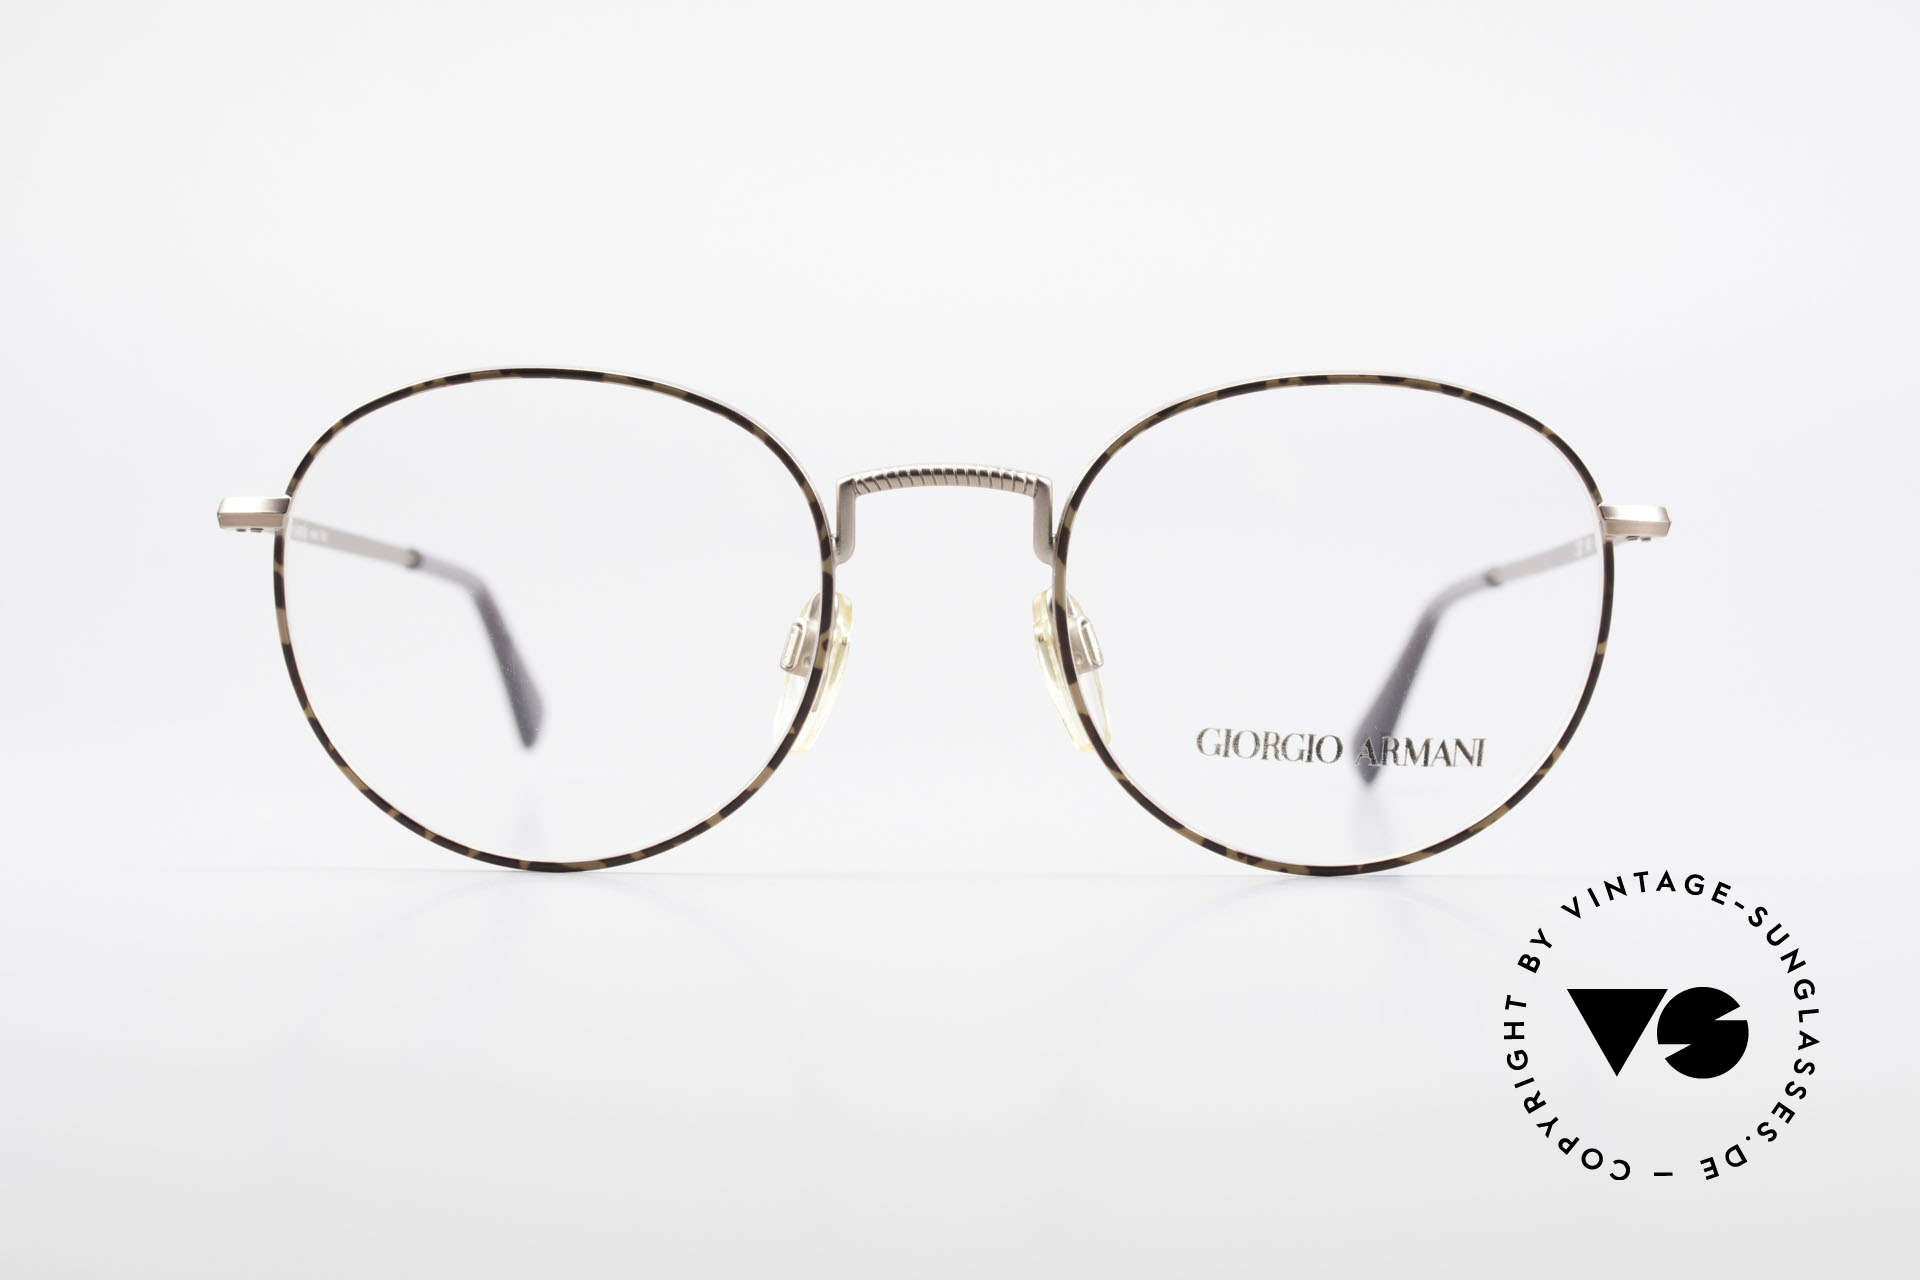 Giorgio Armani 231 80er Panto Brille No Retro, zeitloses 80er Jahre Modell in Premium-Qualität, Passend für Herren